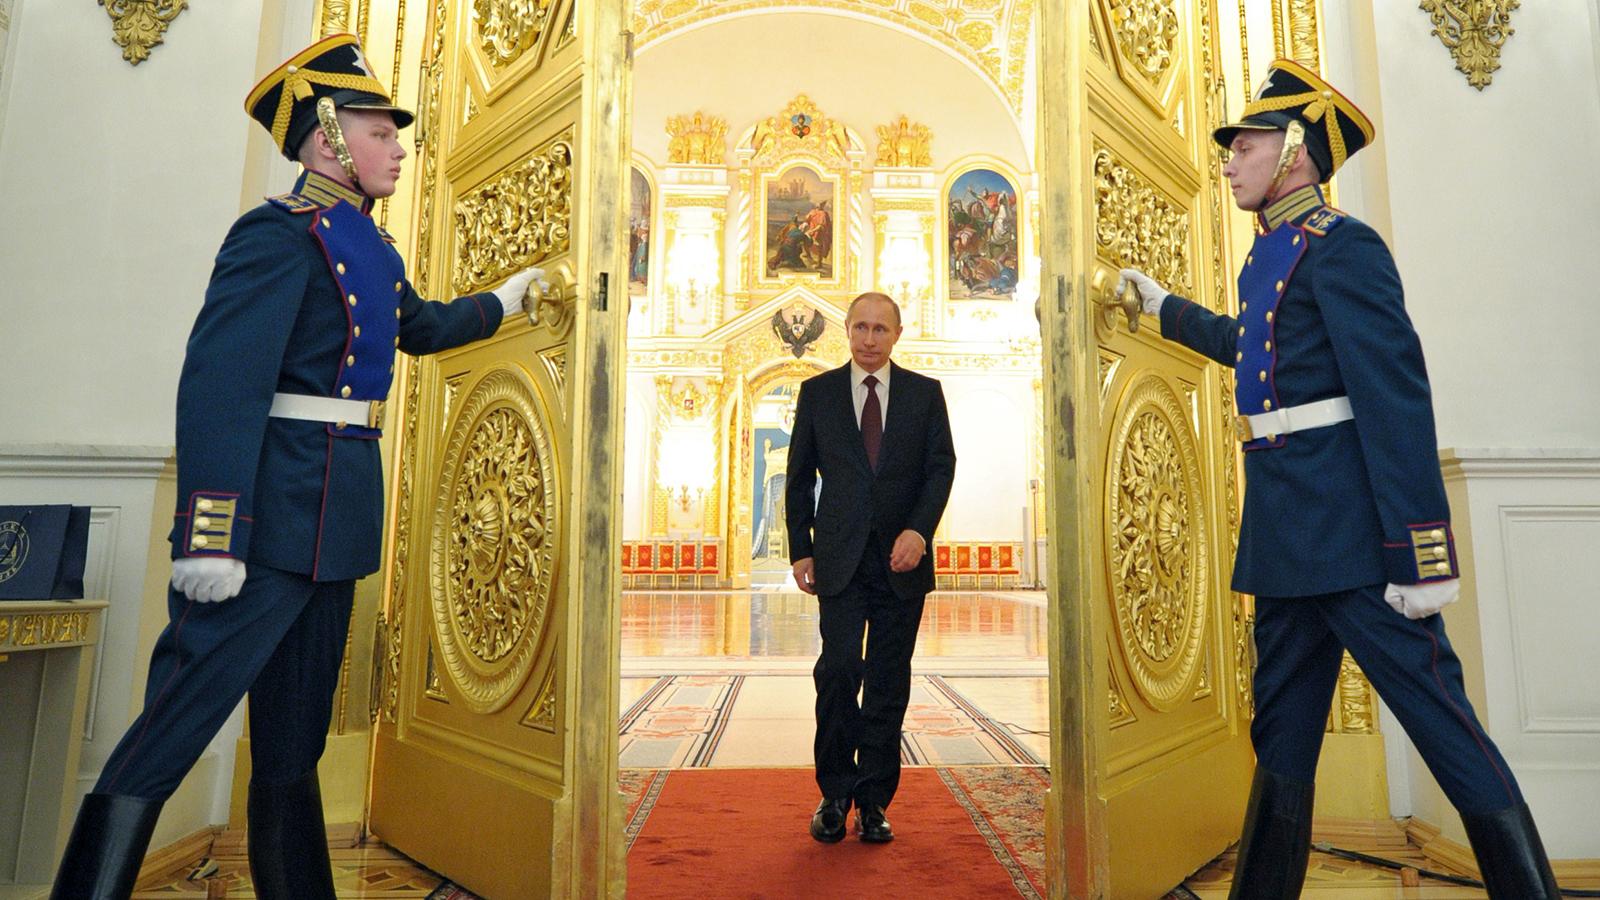 Ρωσία: Ο Βλαντιμίρ Πούτιν ως νέος Πέτρος ο Μέγας – Είναι η μοίρα μου να επιστρέψω τα εδάφη της χώρας